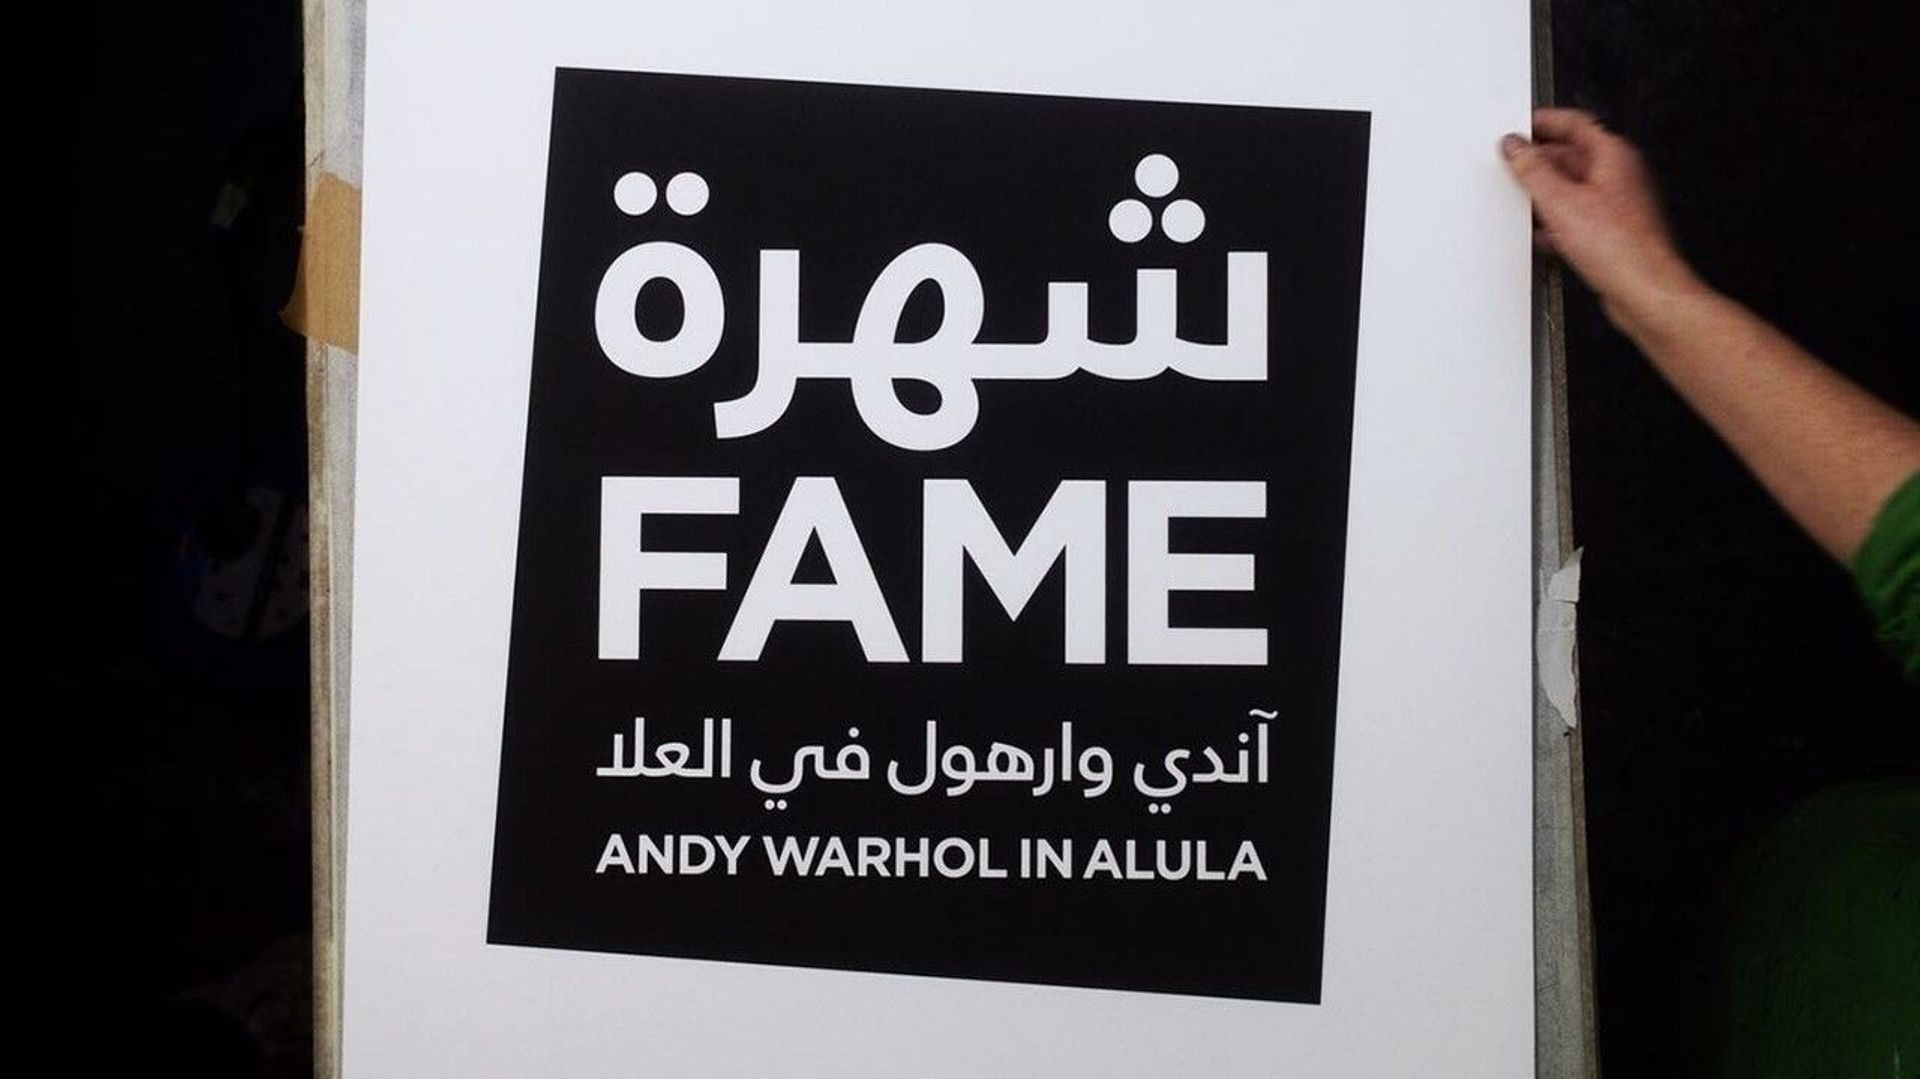 L’exposition "FAME : Andy Warhol in AlUla" est organisée par le Musée Andy Warhol à la demande de la Commission royale pour AlUla.